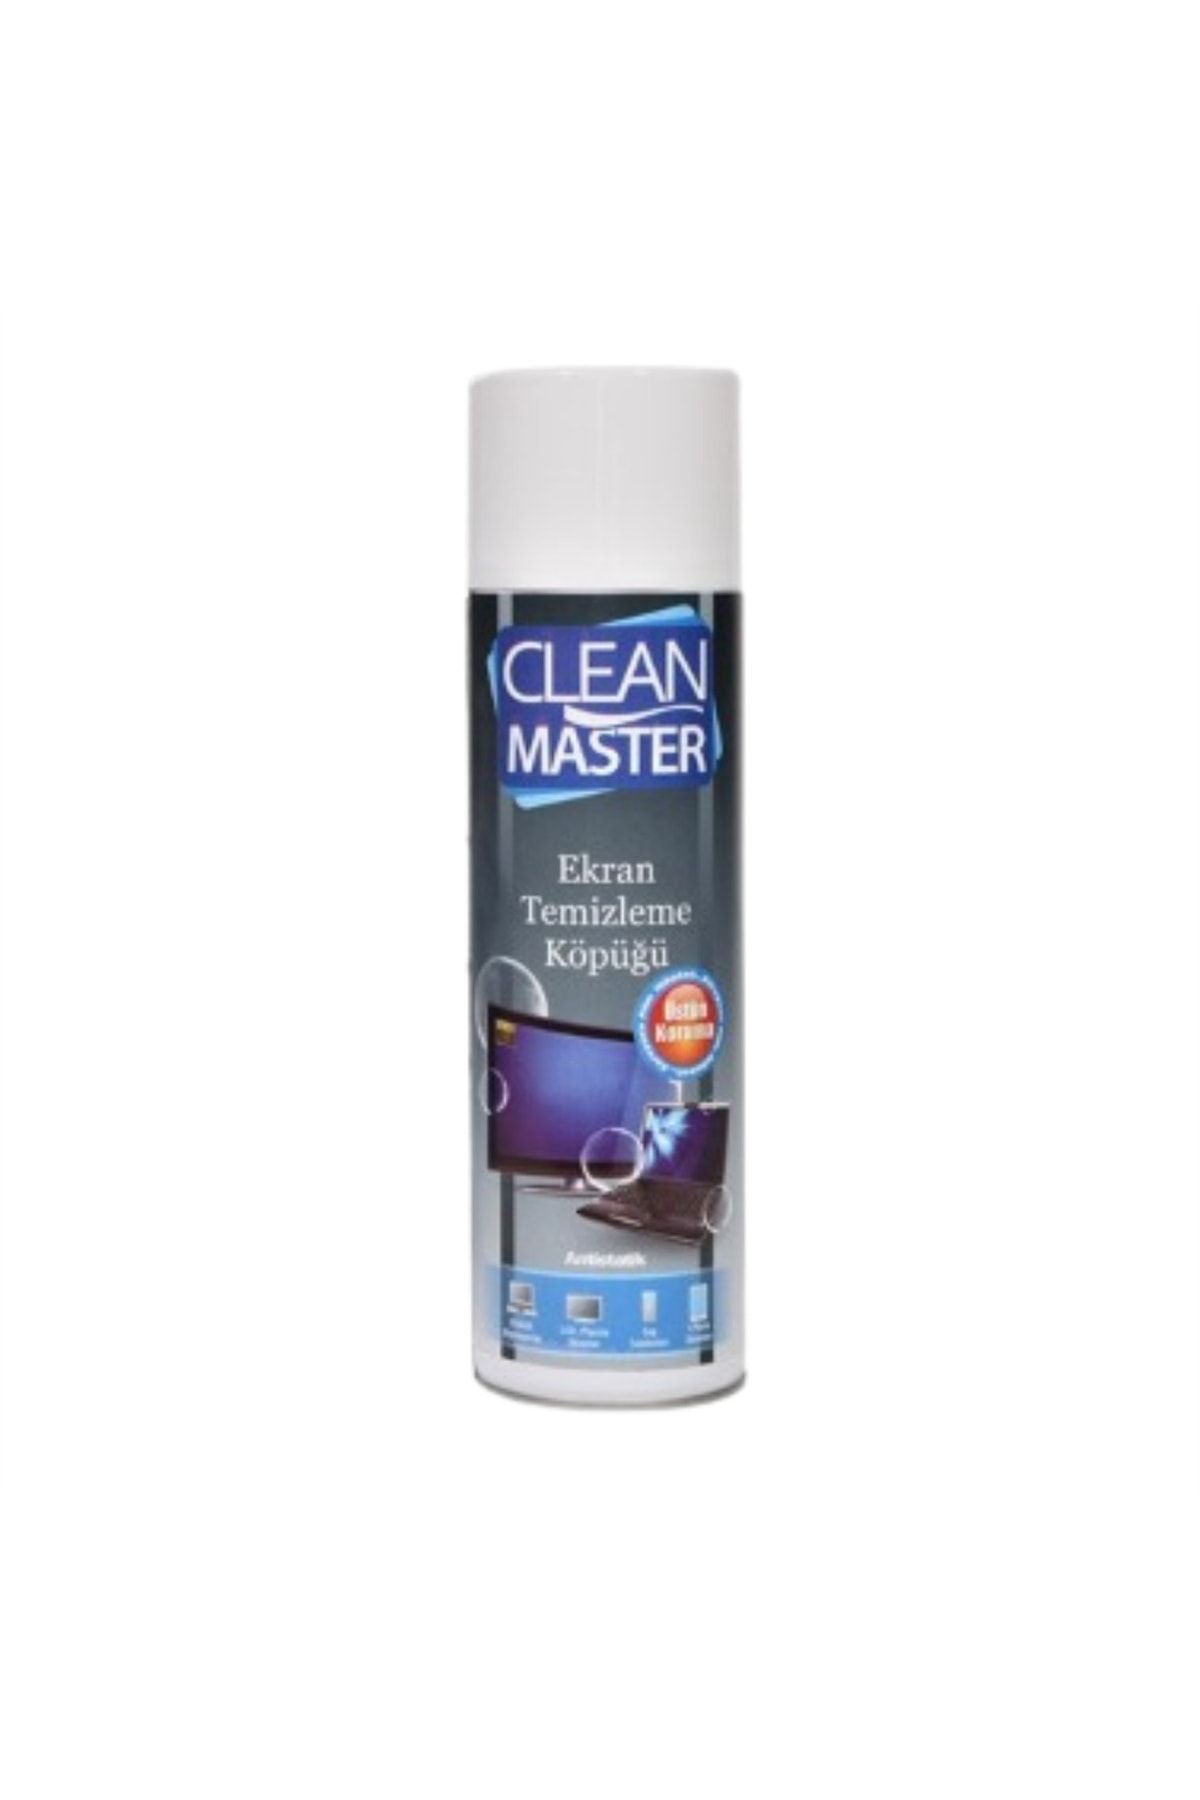 Clean Master Ekran Temizleme Köpüğü 500 ml